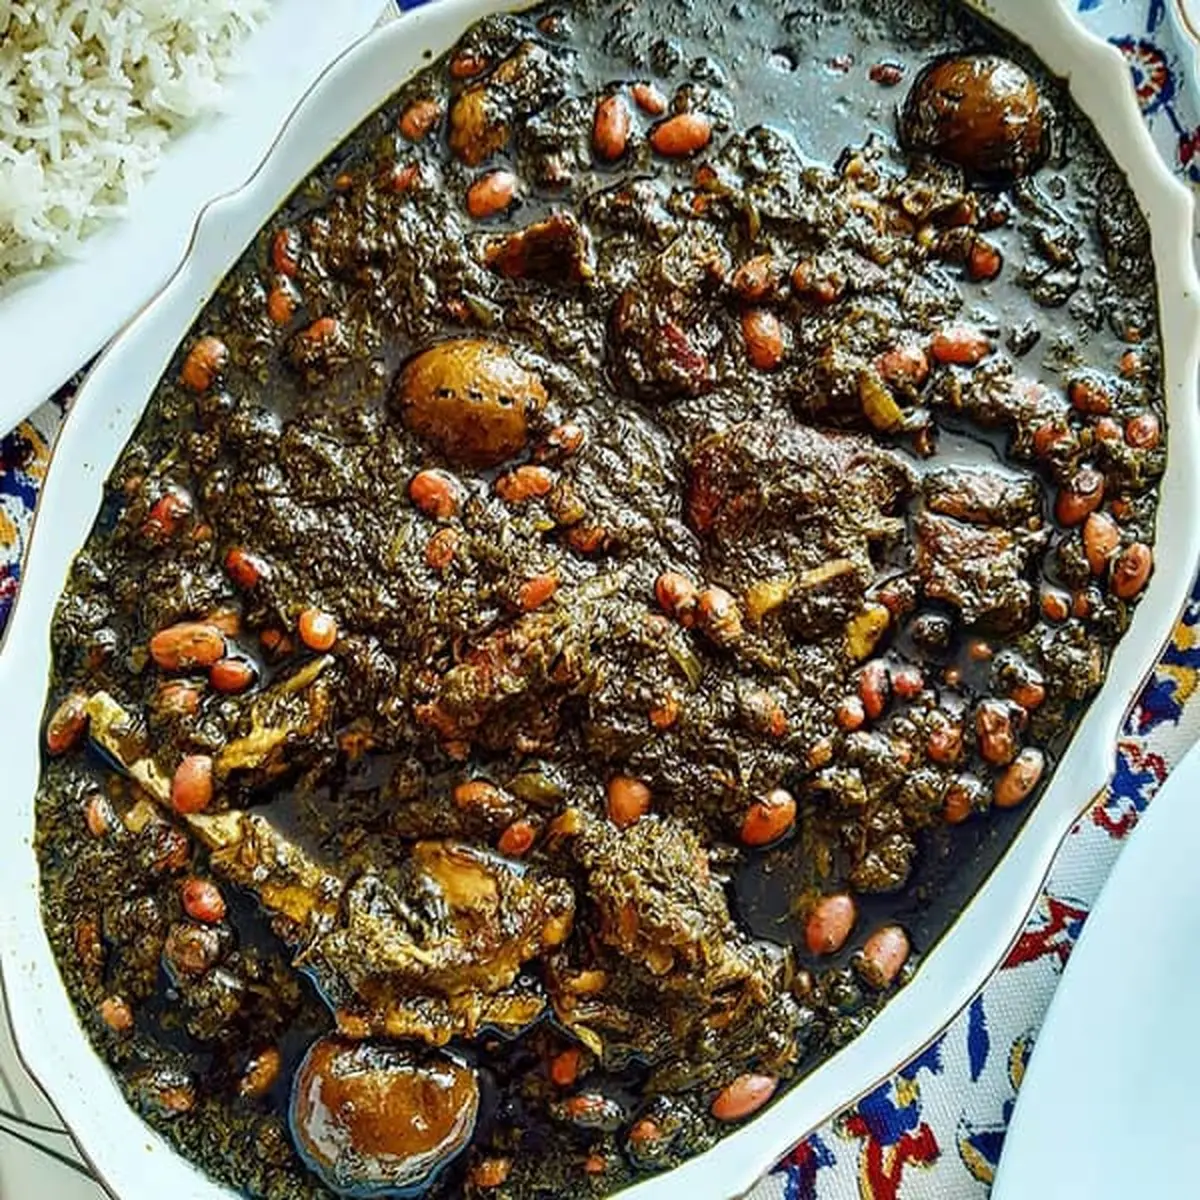 قرمه سبزی اصیل ایرانی رو اینطوری بپز! | طرز تهیه خورش قرمه سبزی + ویدئو